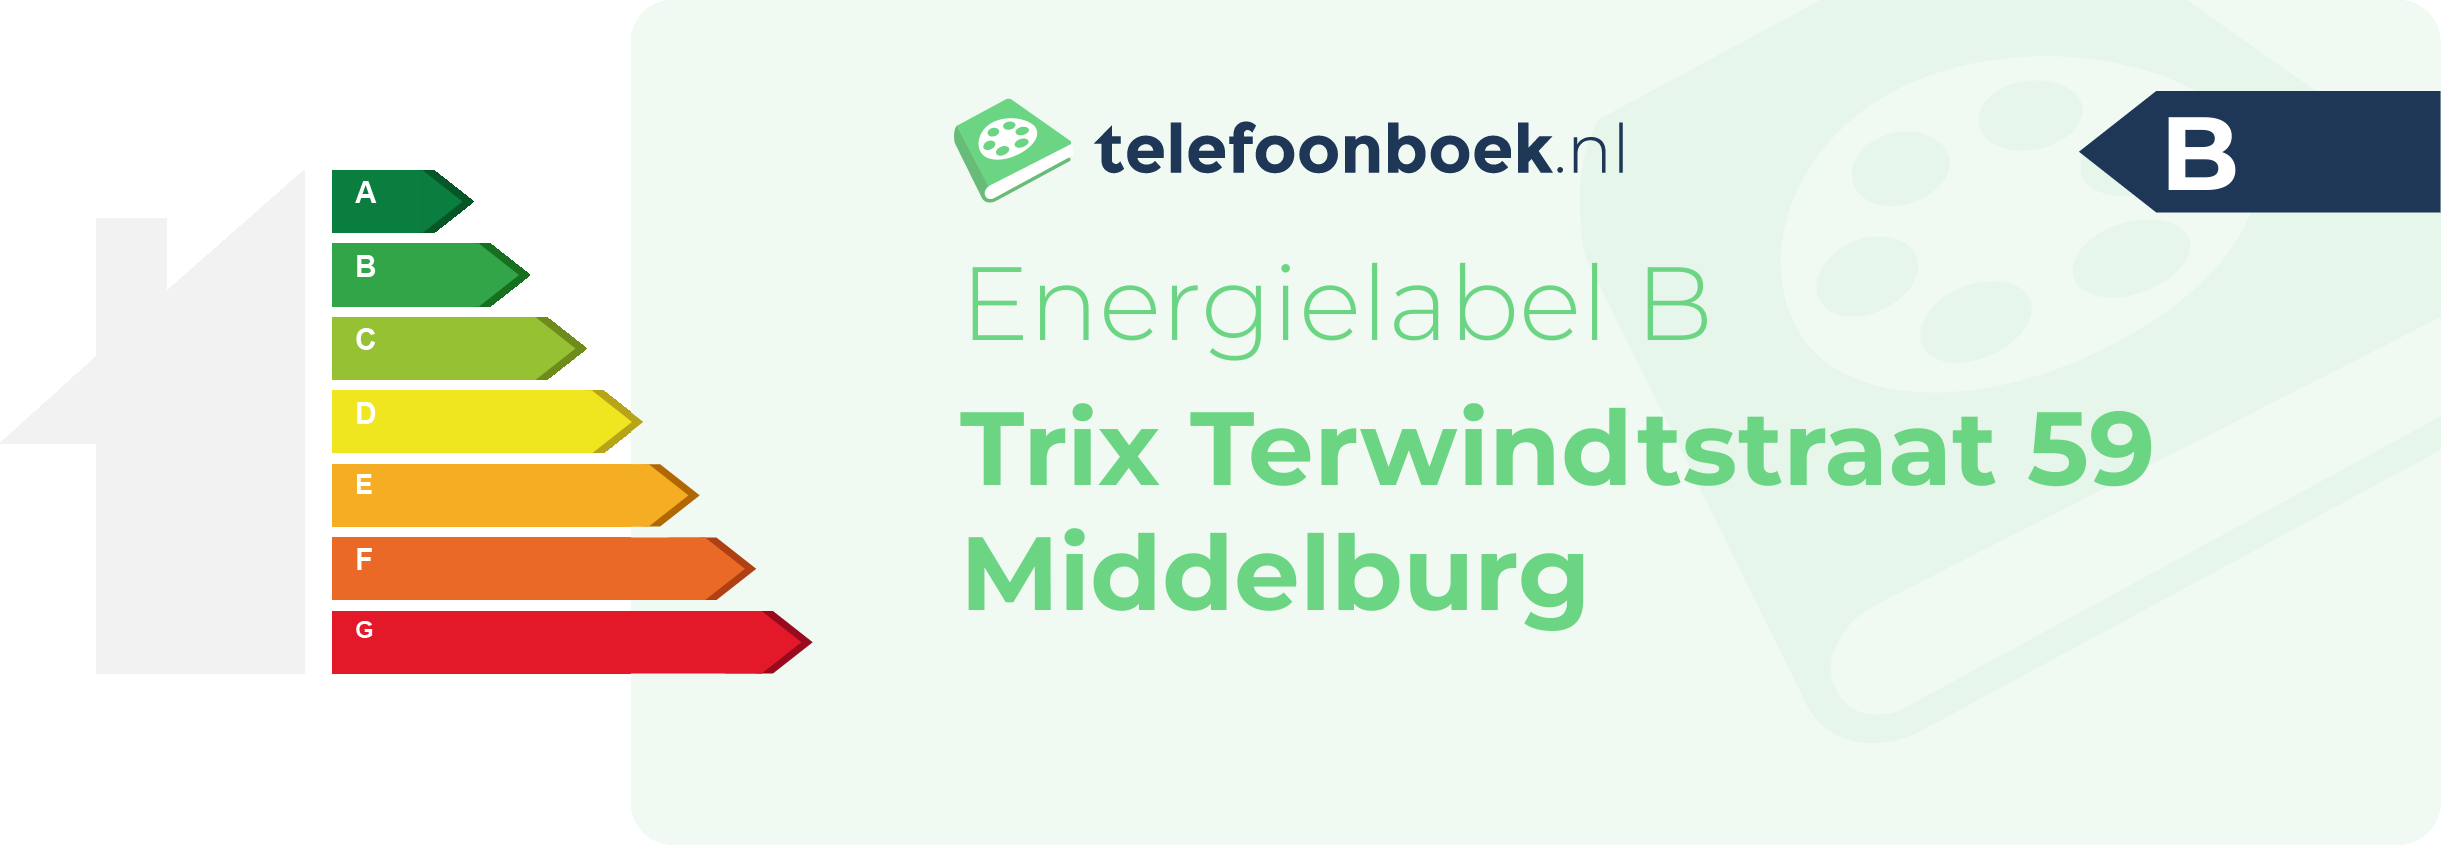 Energielabel Trix Terwindtstraat 59 Middelburg